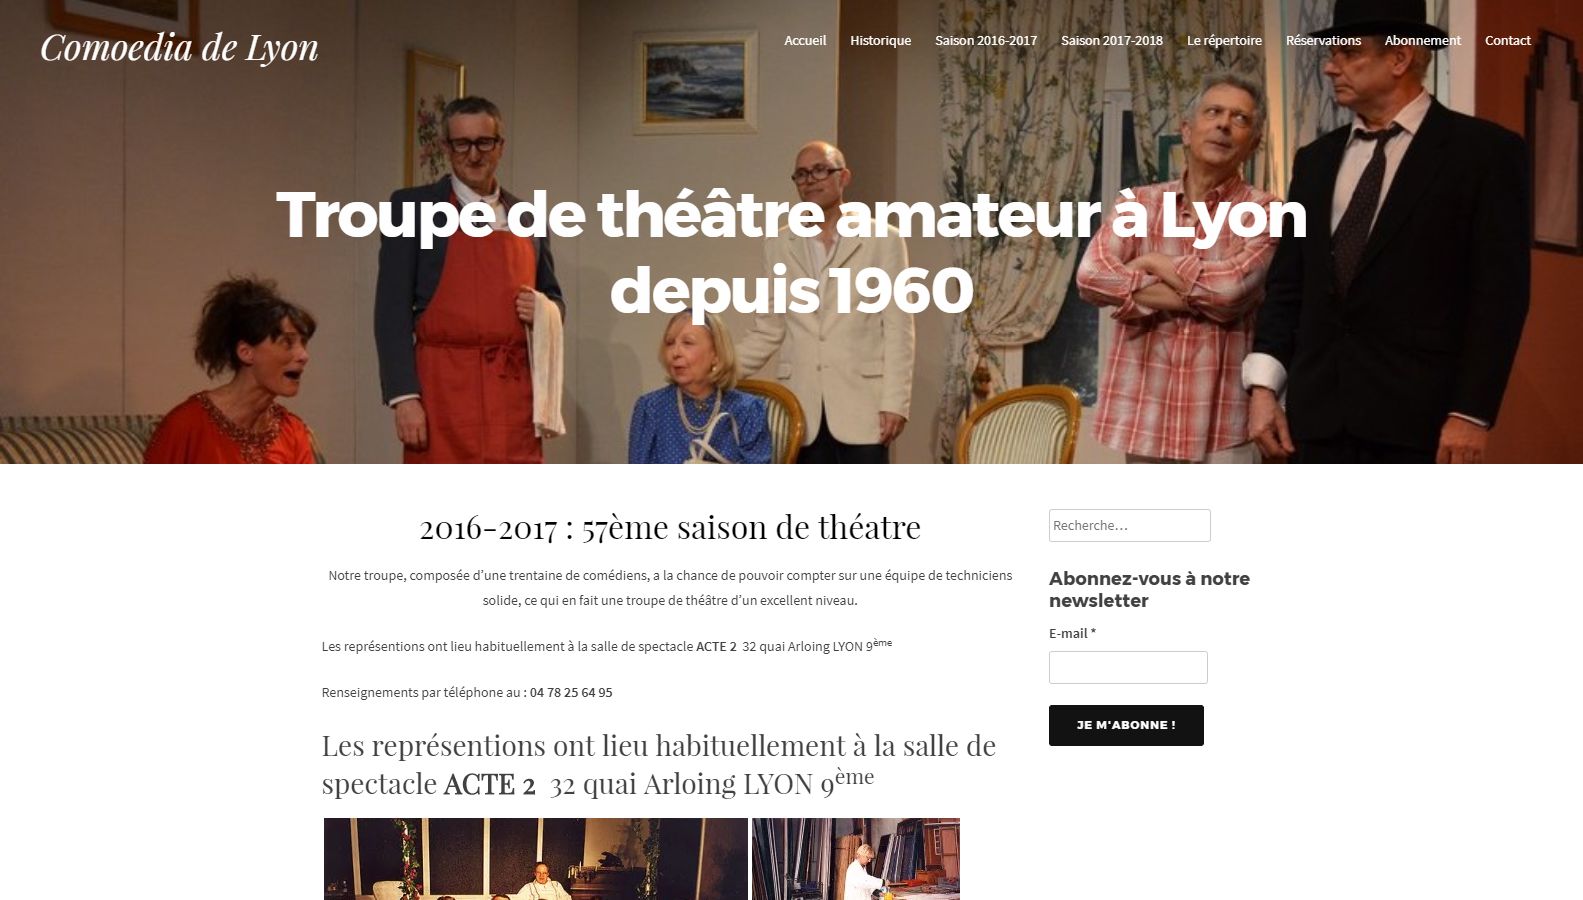 Réalisation RP2I (Romaric Pibolleau): Comoedia de Lyon - Site Web<br>Gestion des photos des représentations<br>Gestion de l'outil de réservation en ligne.